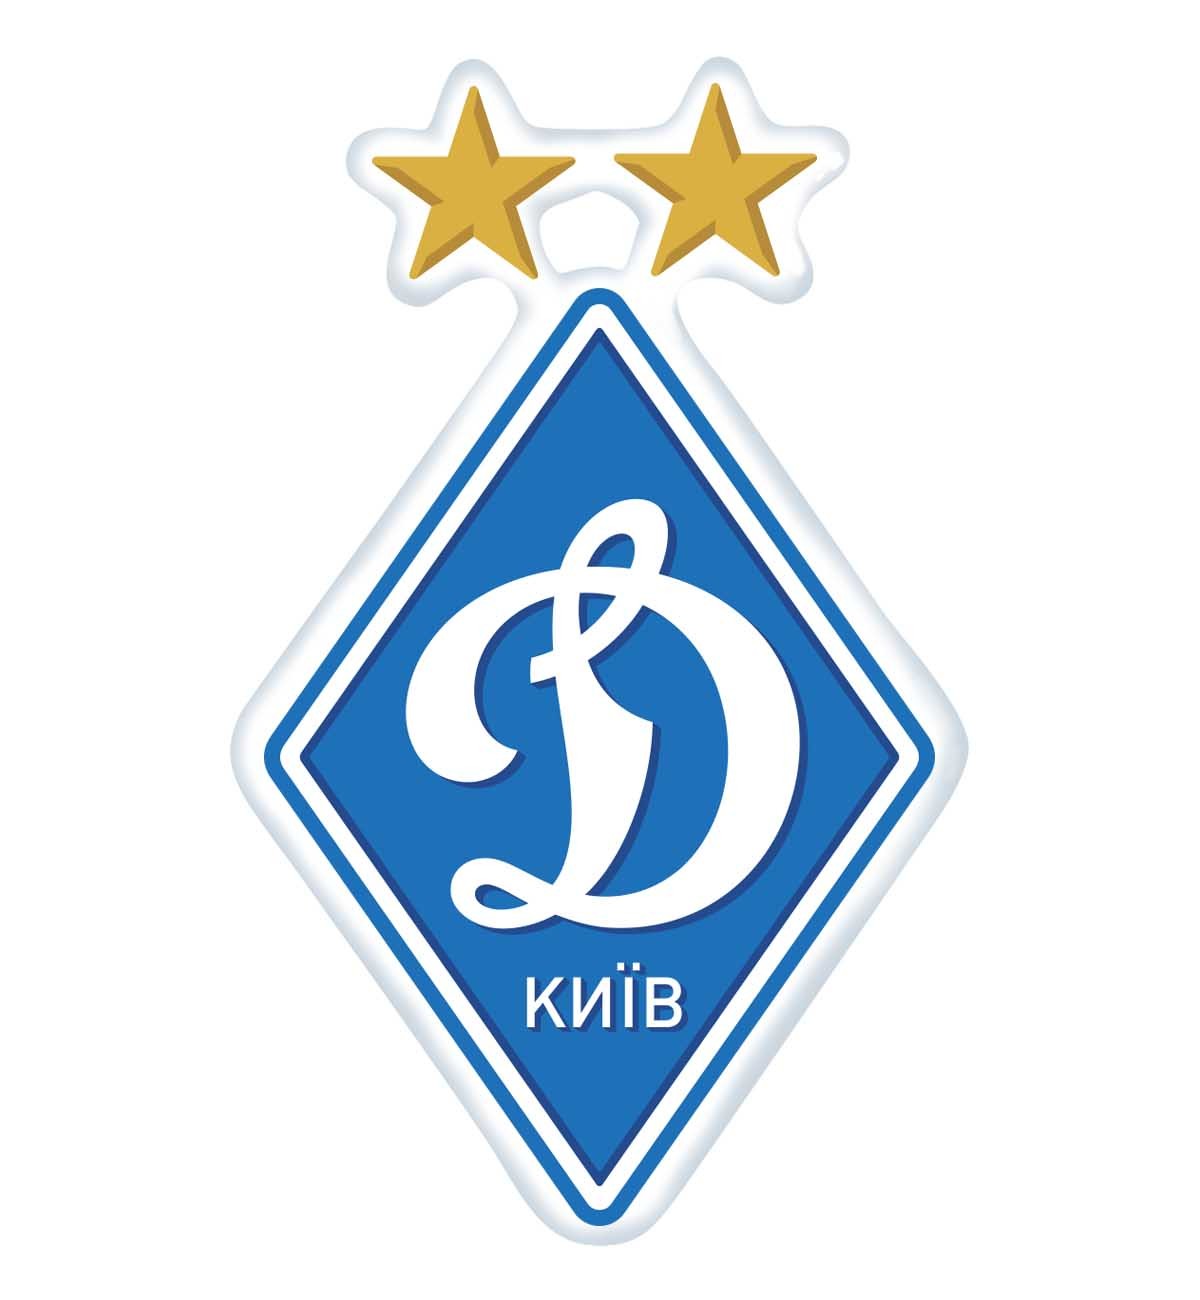 FC "Dynamo" Kyiv sticker on the car